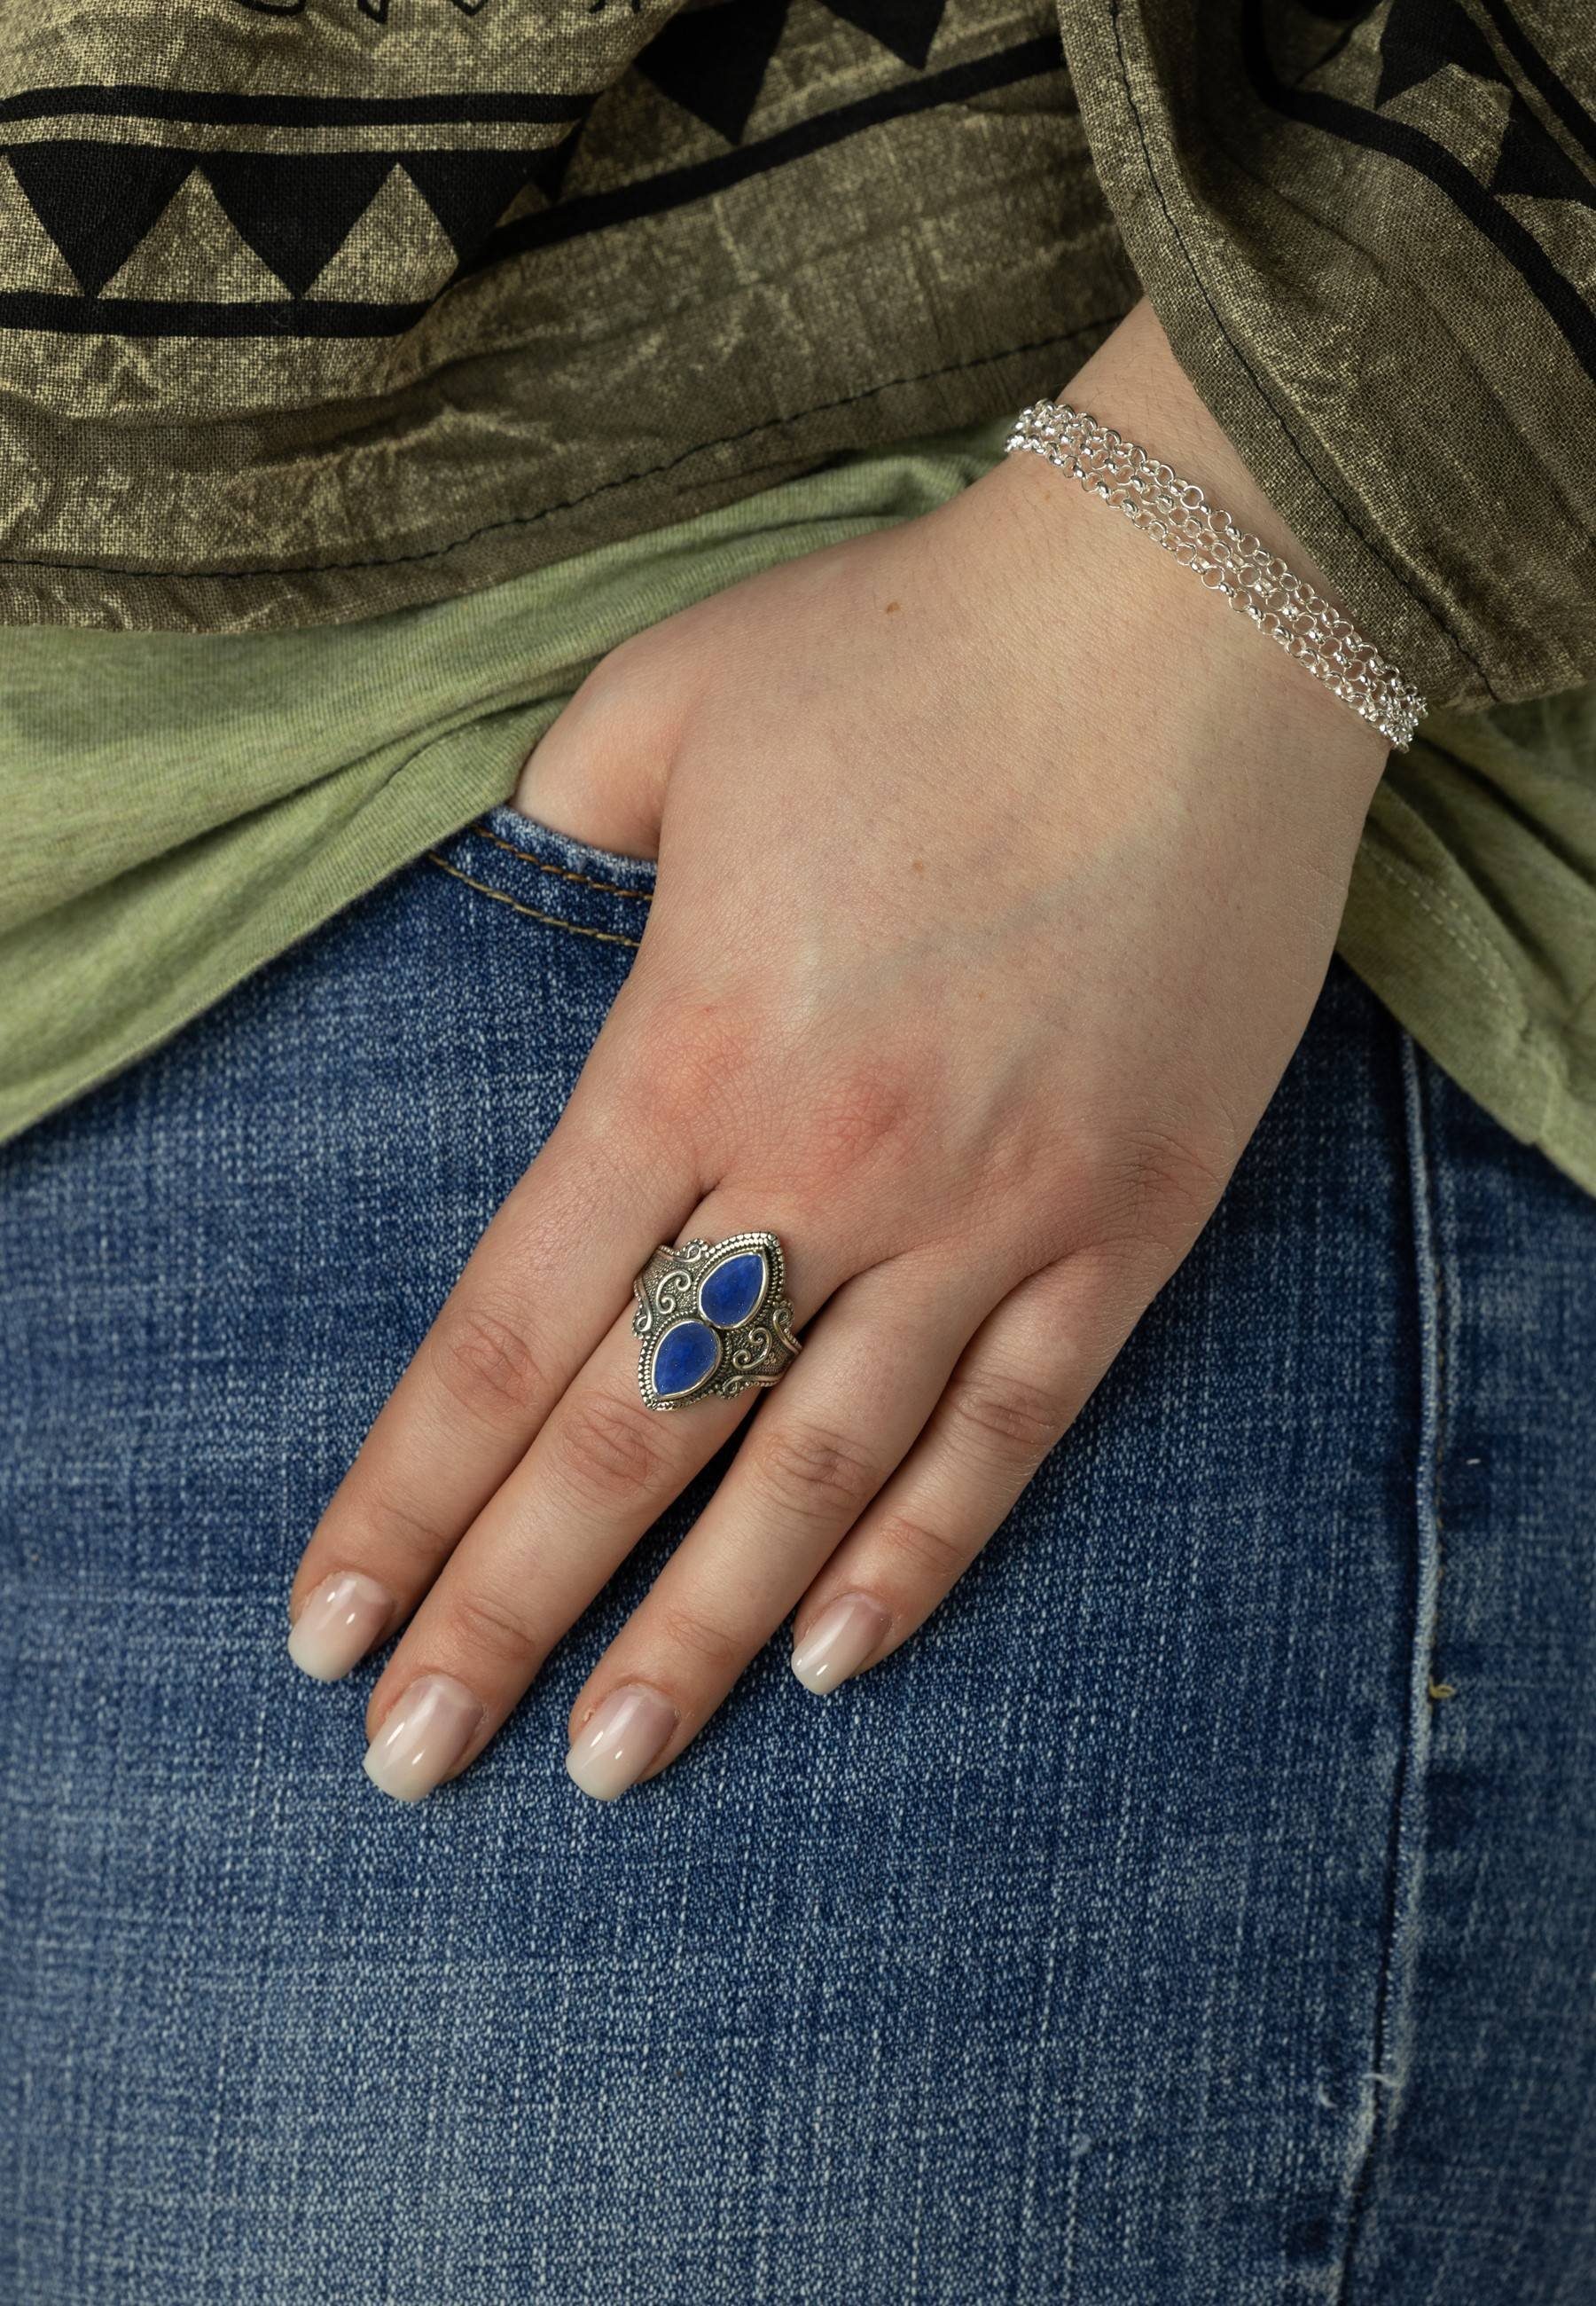 mantraroma Silberring 925er Silber Lapis mit Lazuli